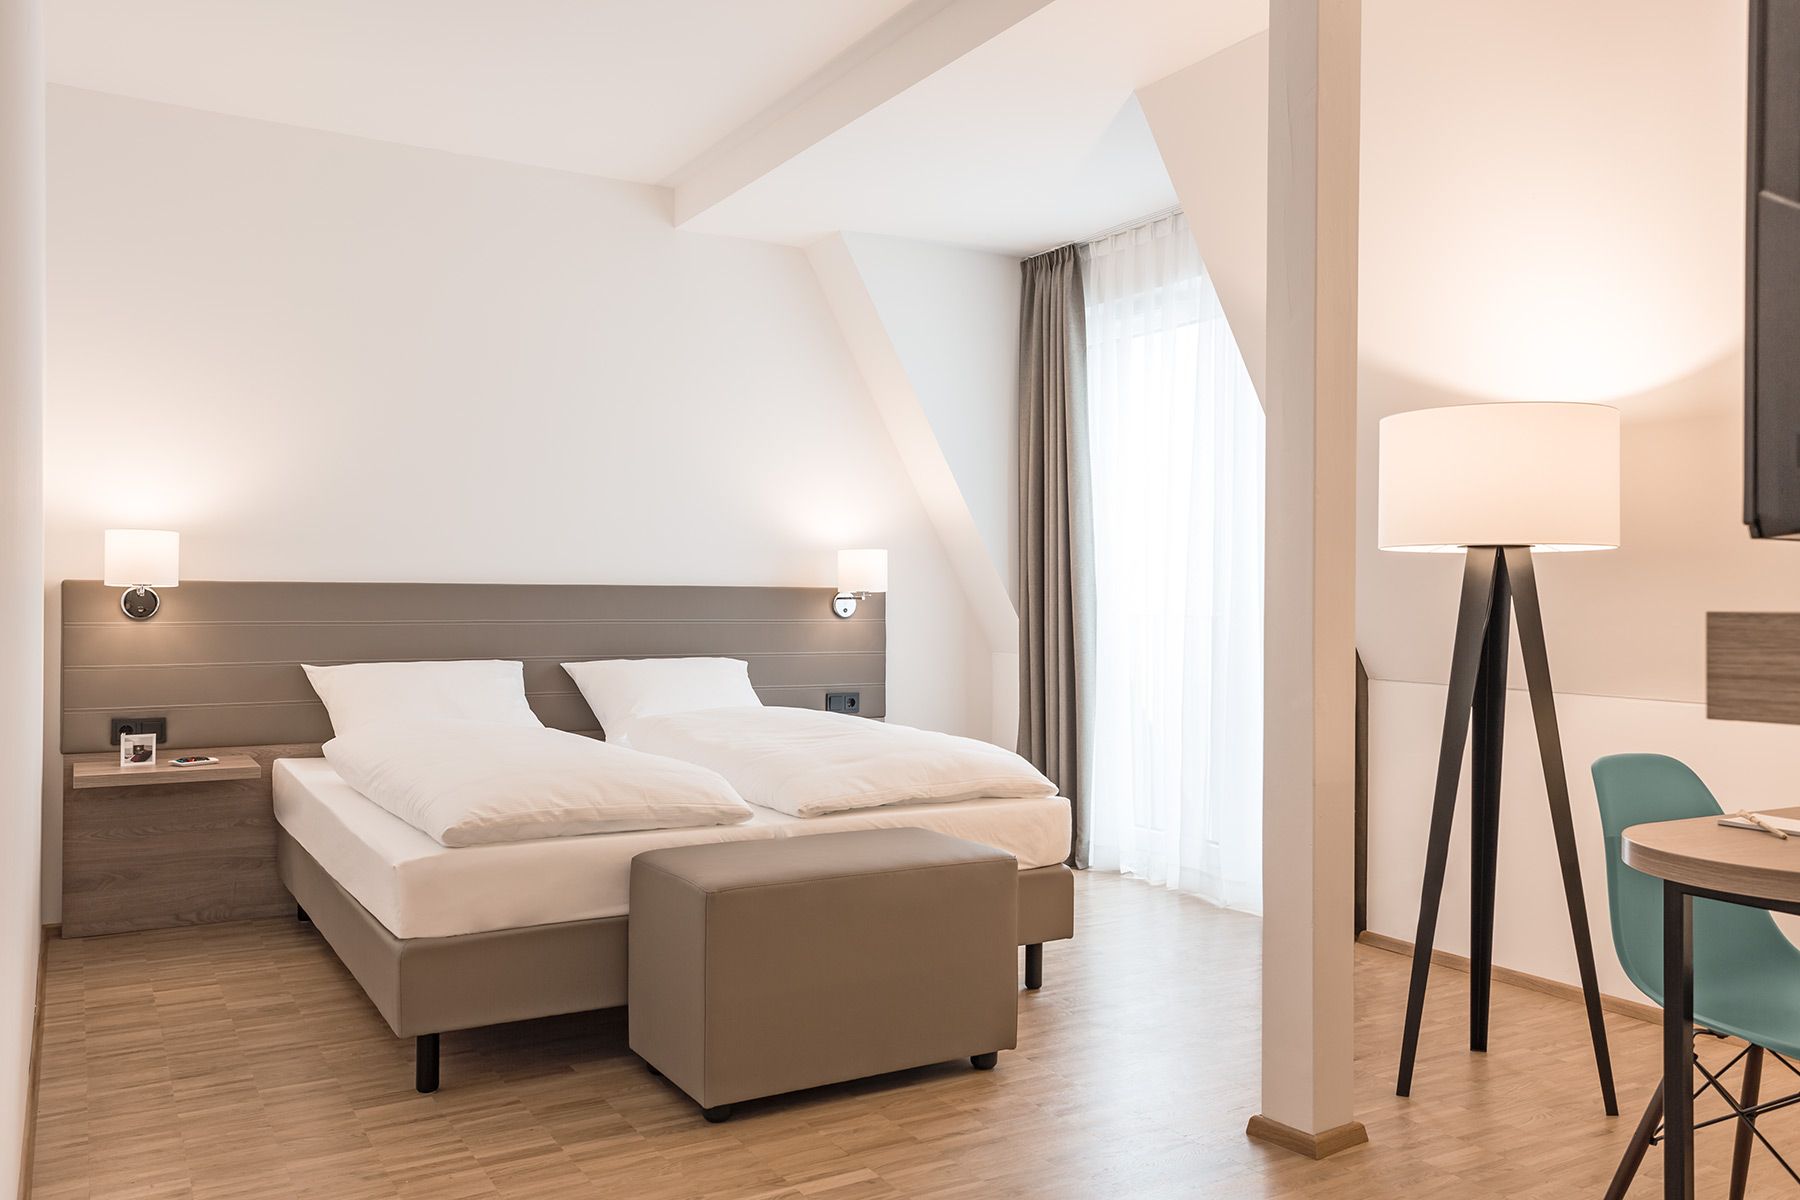 Modern und hell durch die APPIA Contract GmbH eingerichtete Hotelzimmer mit den entsprechend passenden Leuchten im Hotel Trezor in Singen.